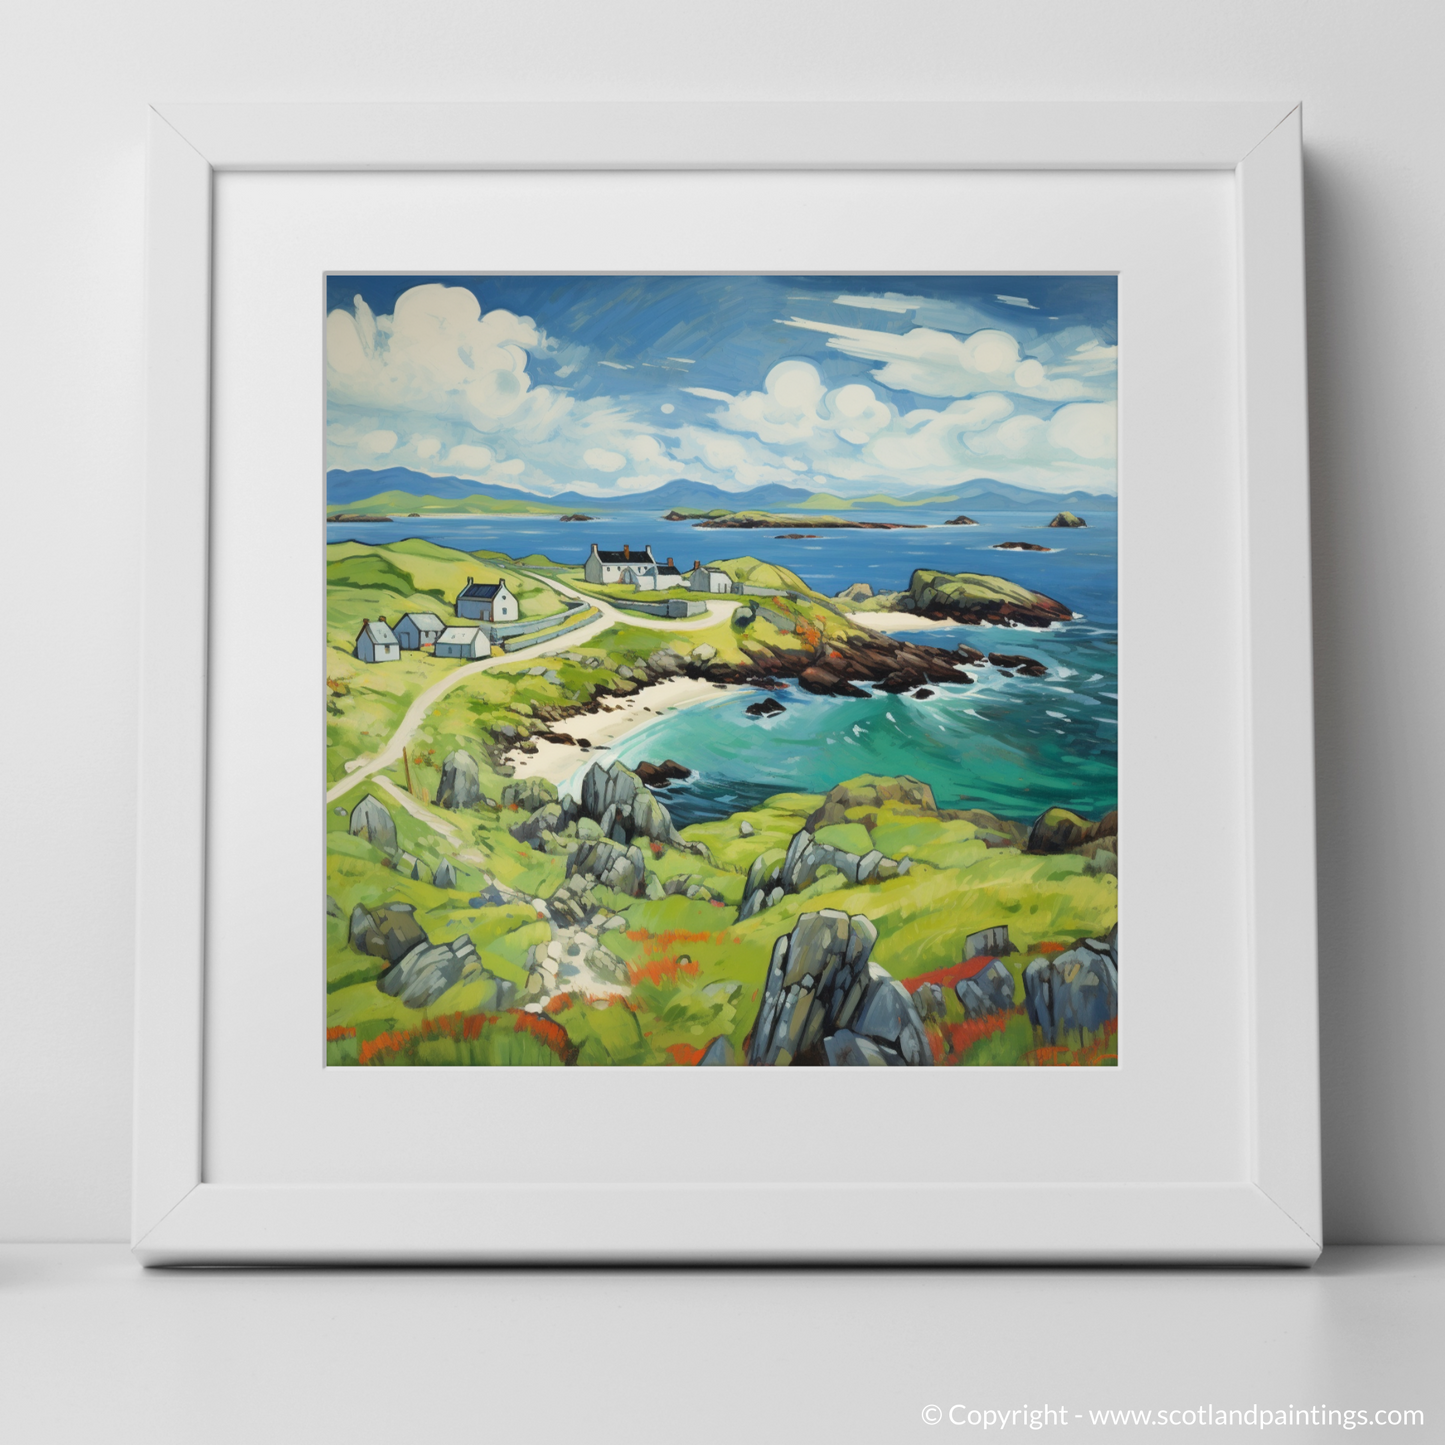 Isle of Iona: A Quaint Naive Art Escape